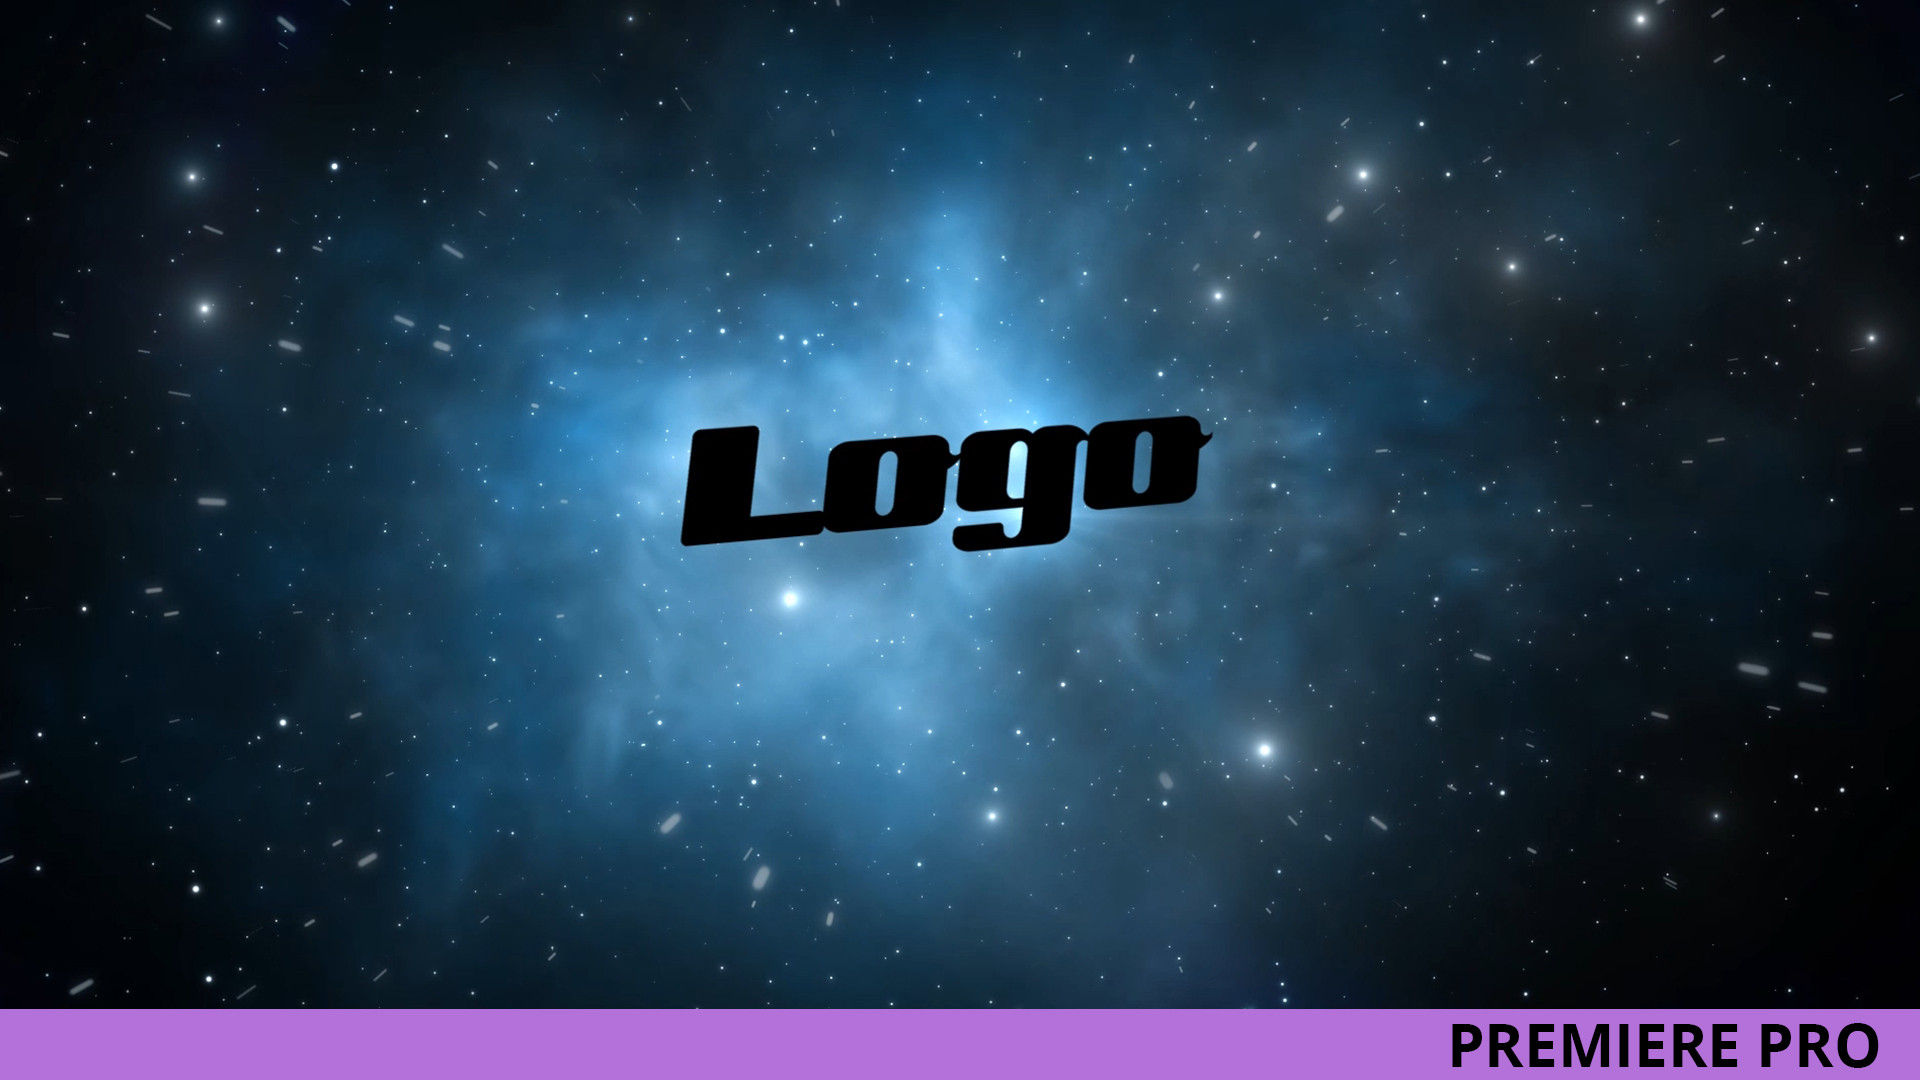 银河系太空标志LOGO展示16素材推荐PR模板